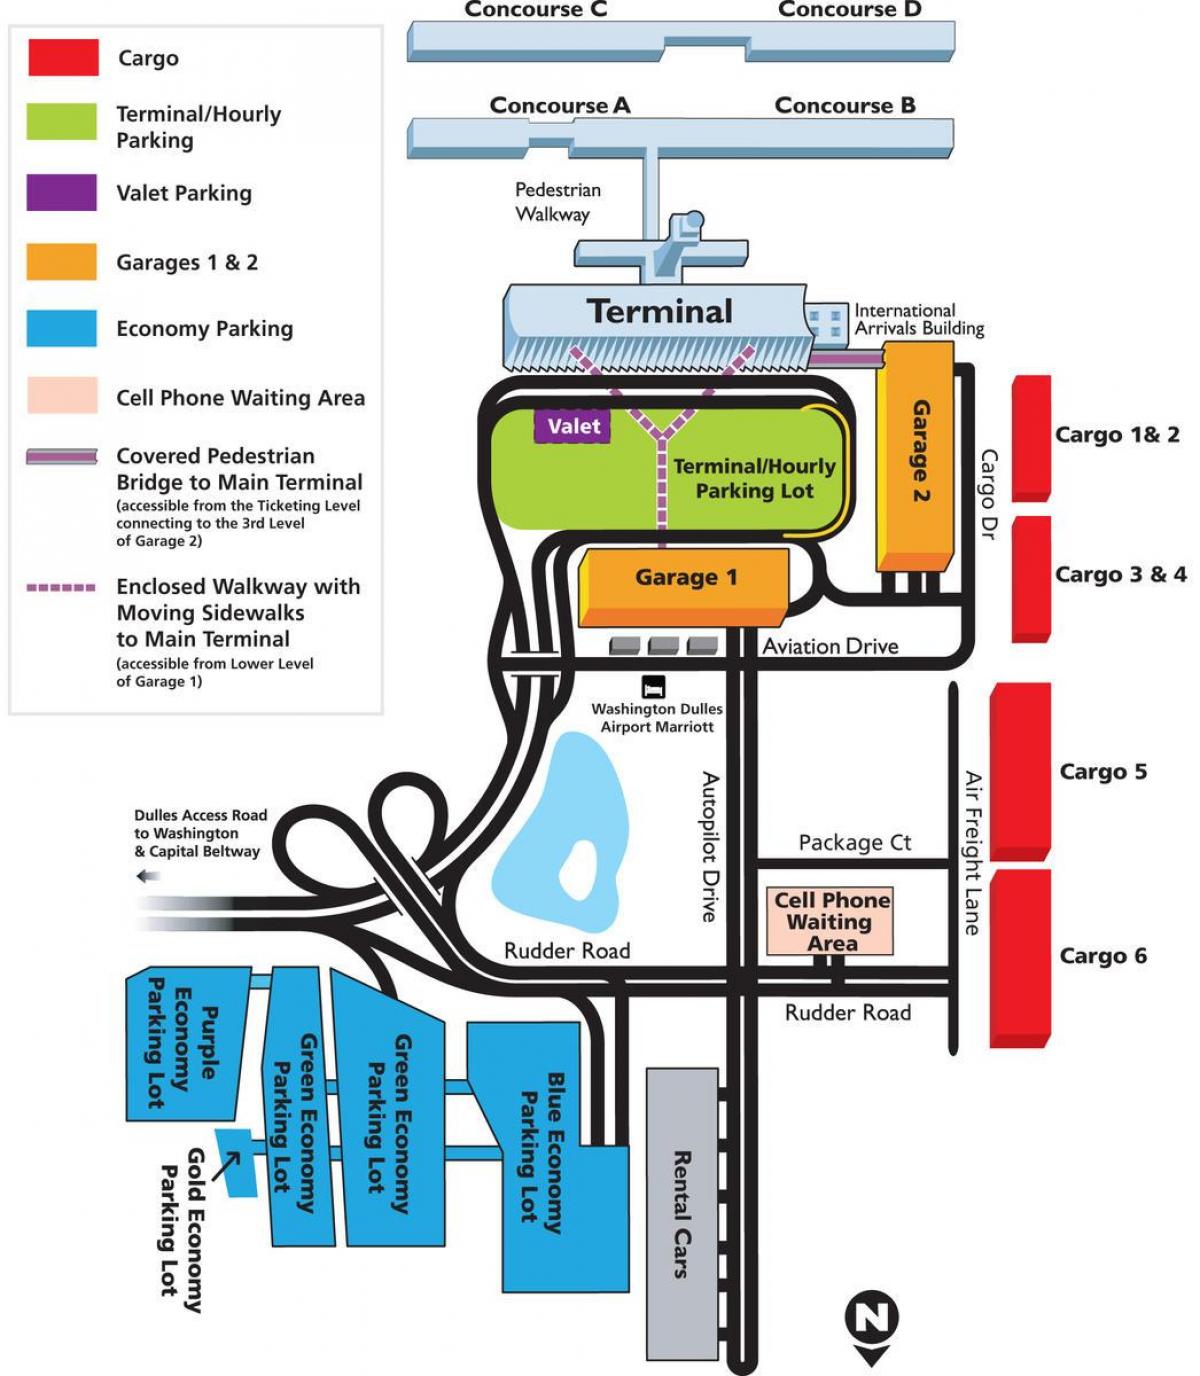 नक्शे के डलेस हवाई अड्डे के क्षेत्र